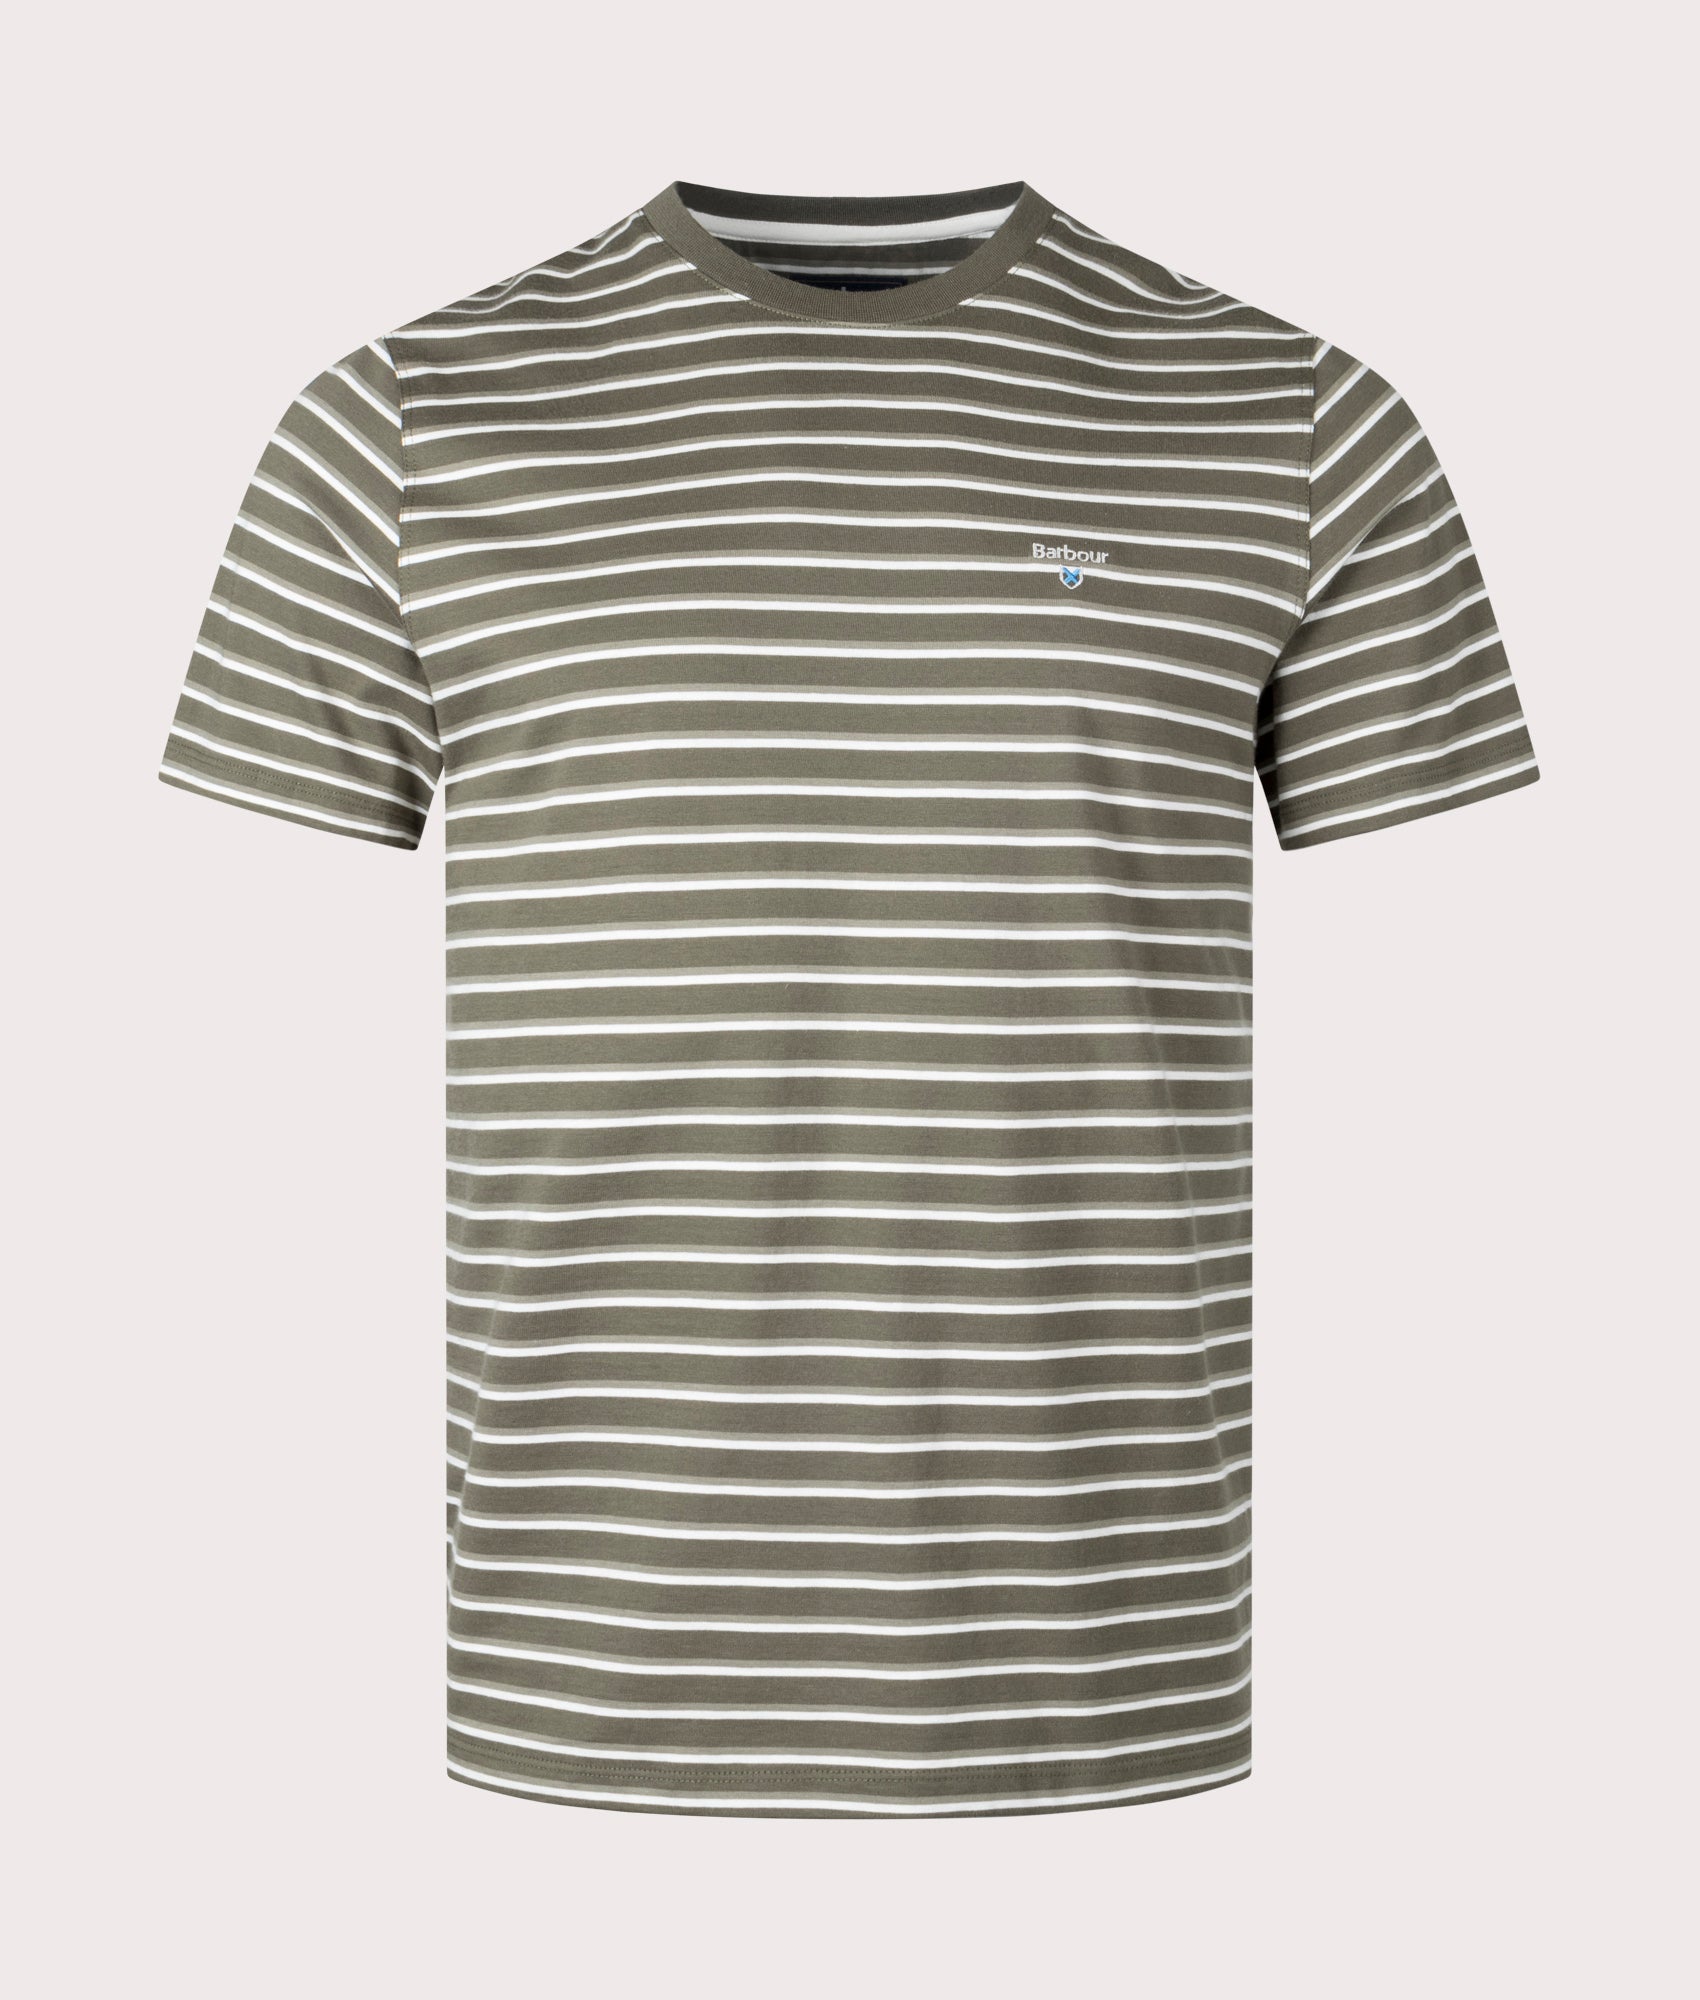 Barbour Lifestyle Mens Ponte Stripe T-Shirt - Colour: SG15 Pale Sage - Size: Large